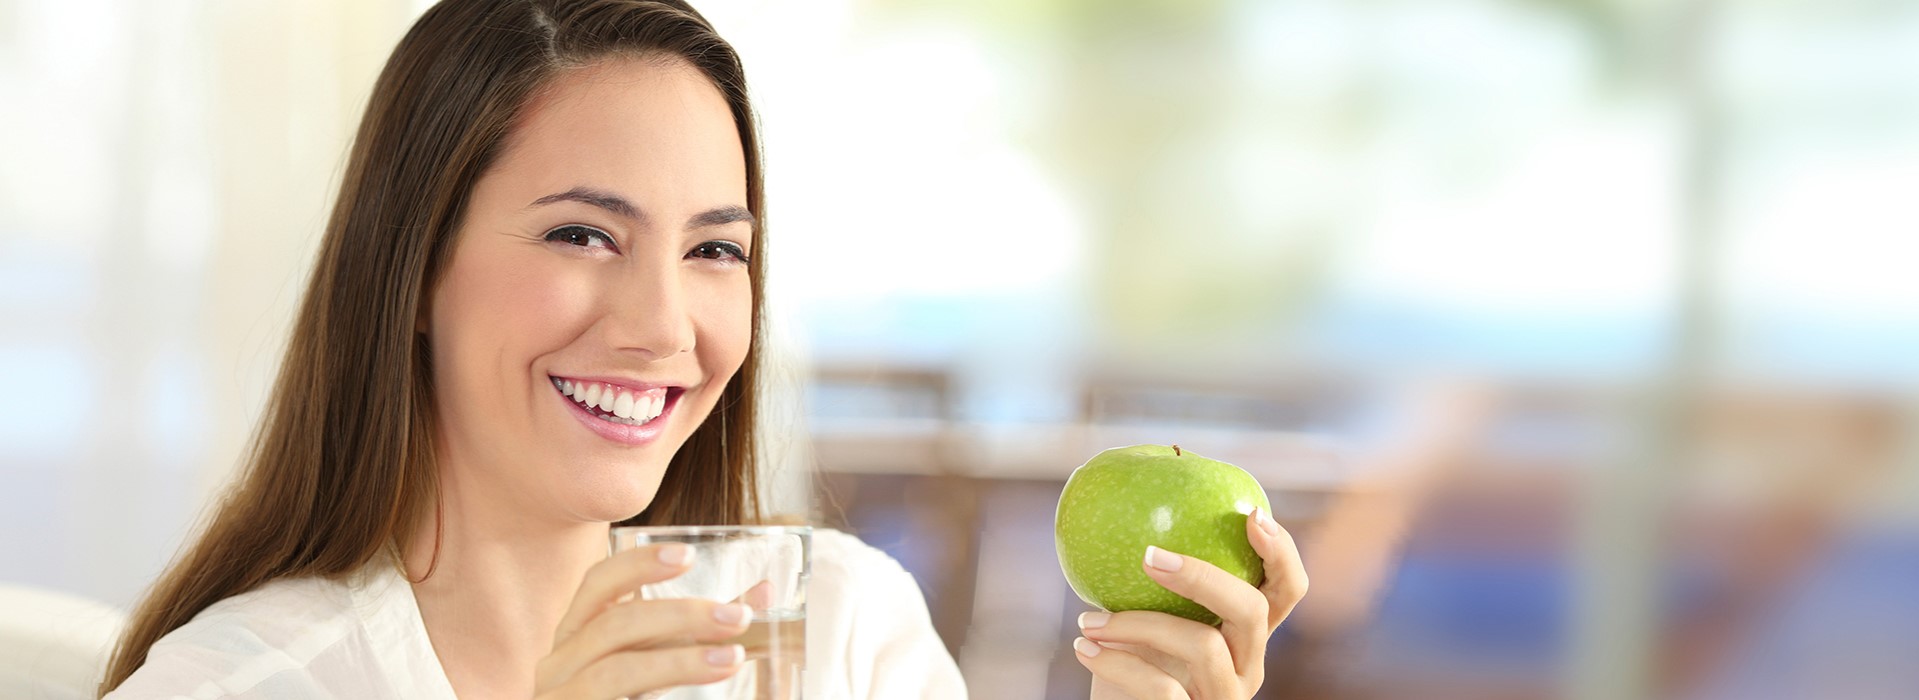 Frau mit Wasserglas und grünem Apfel